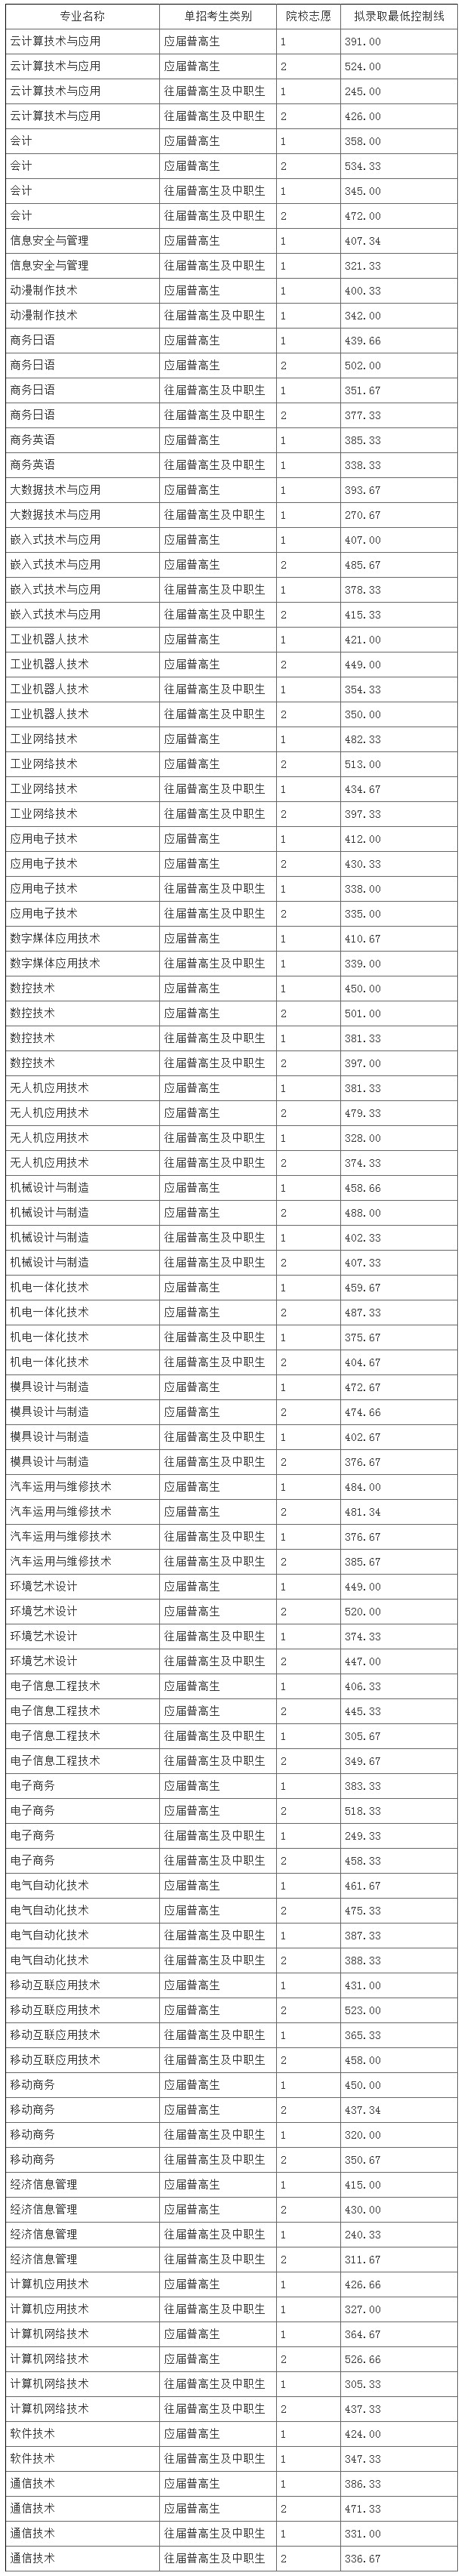 湖南信息职业技术学院2019年单独招生拟录取分院校志愿、分专业、分单招考生类别最低控制线.jpg